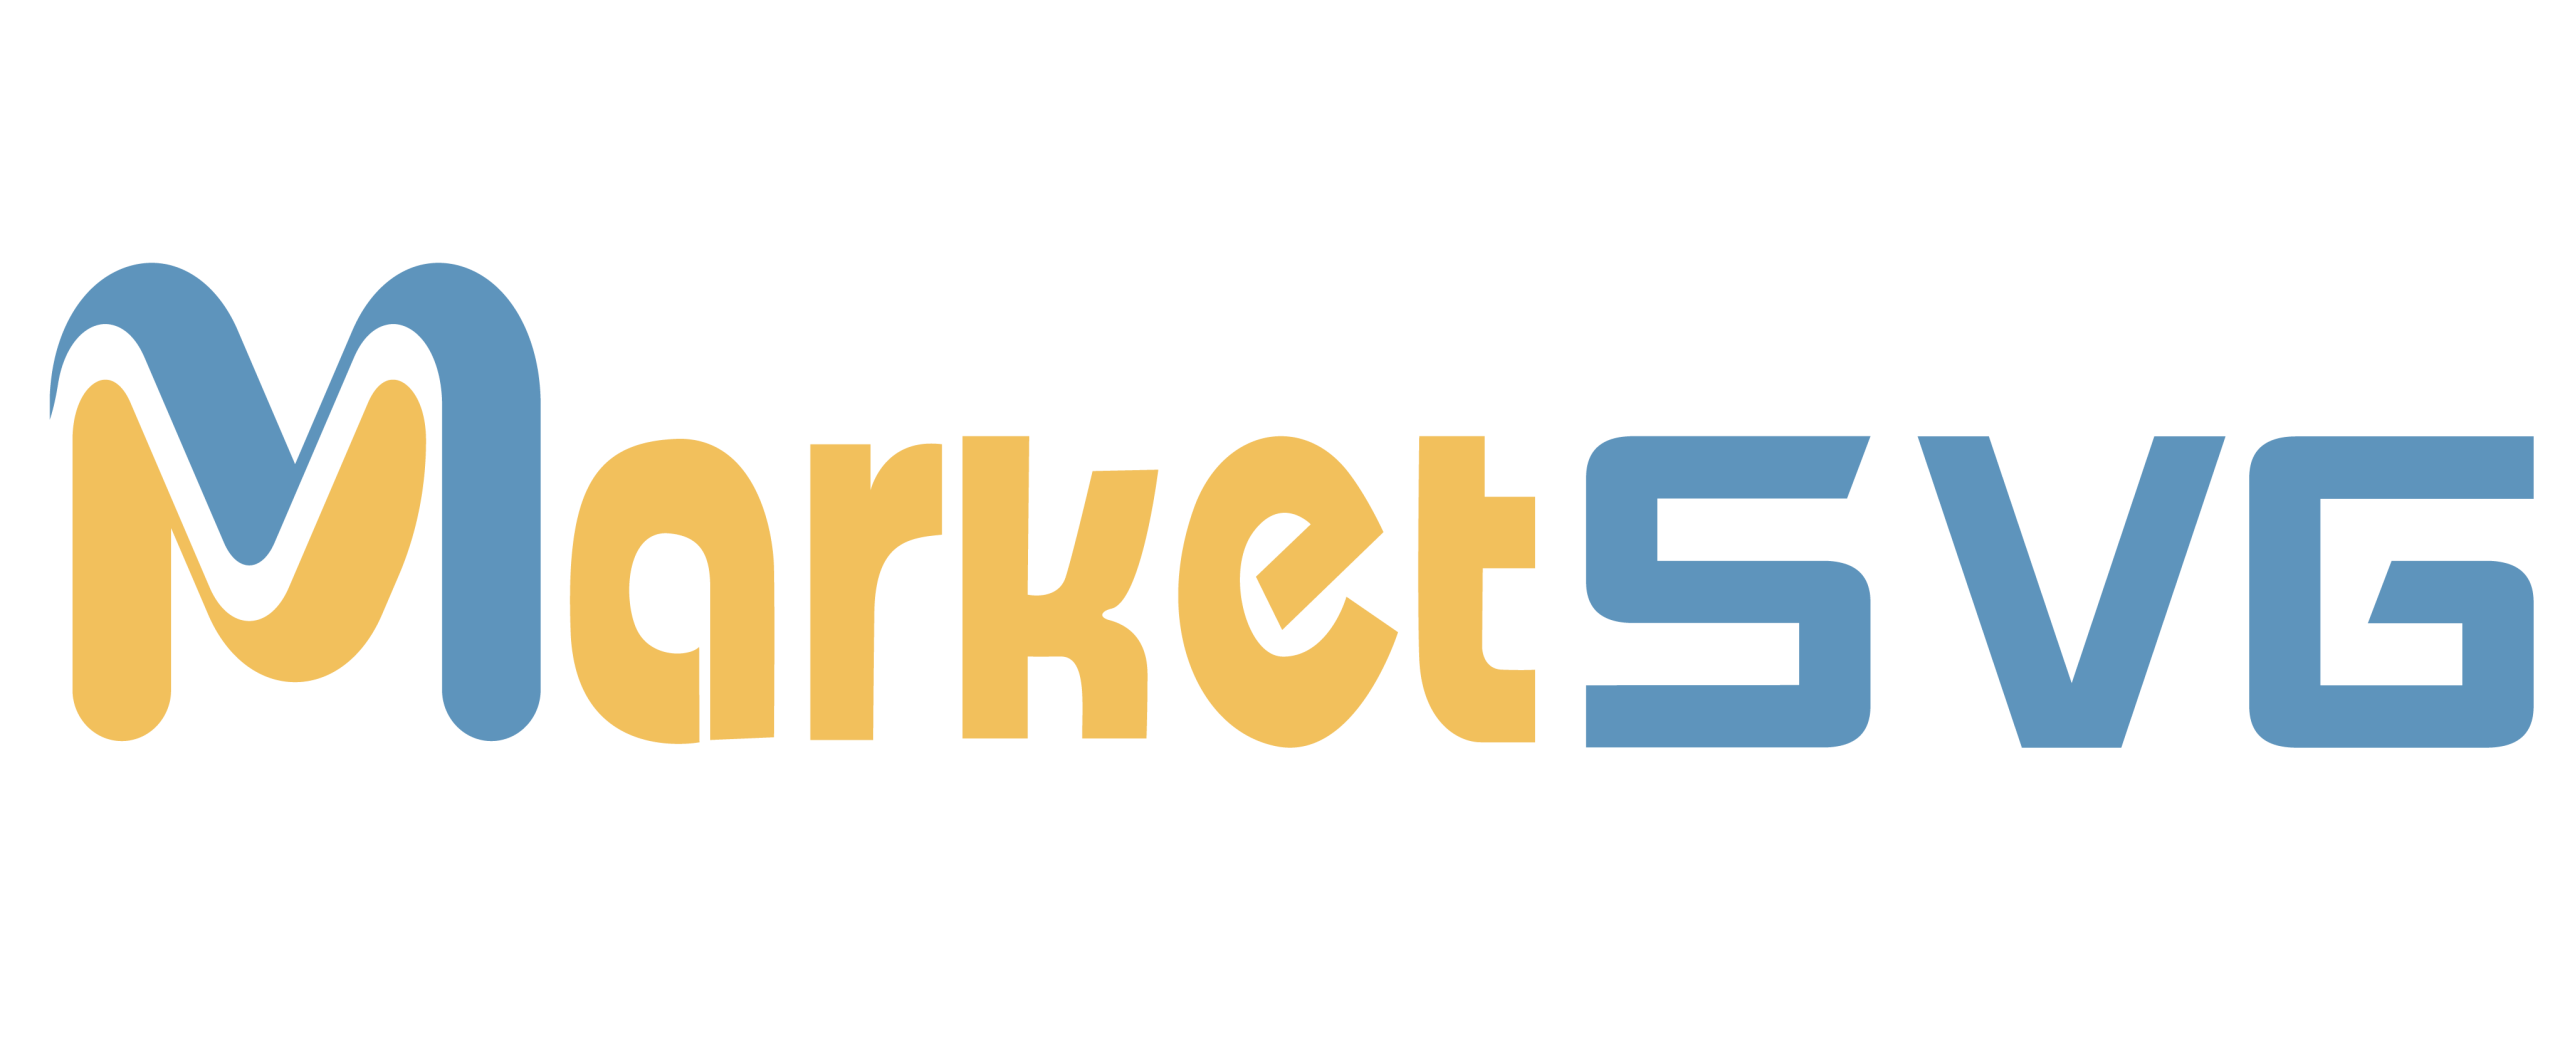 Market SVG